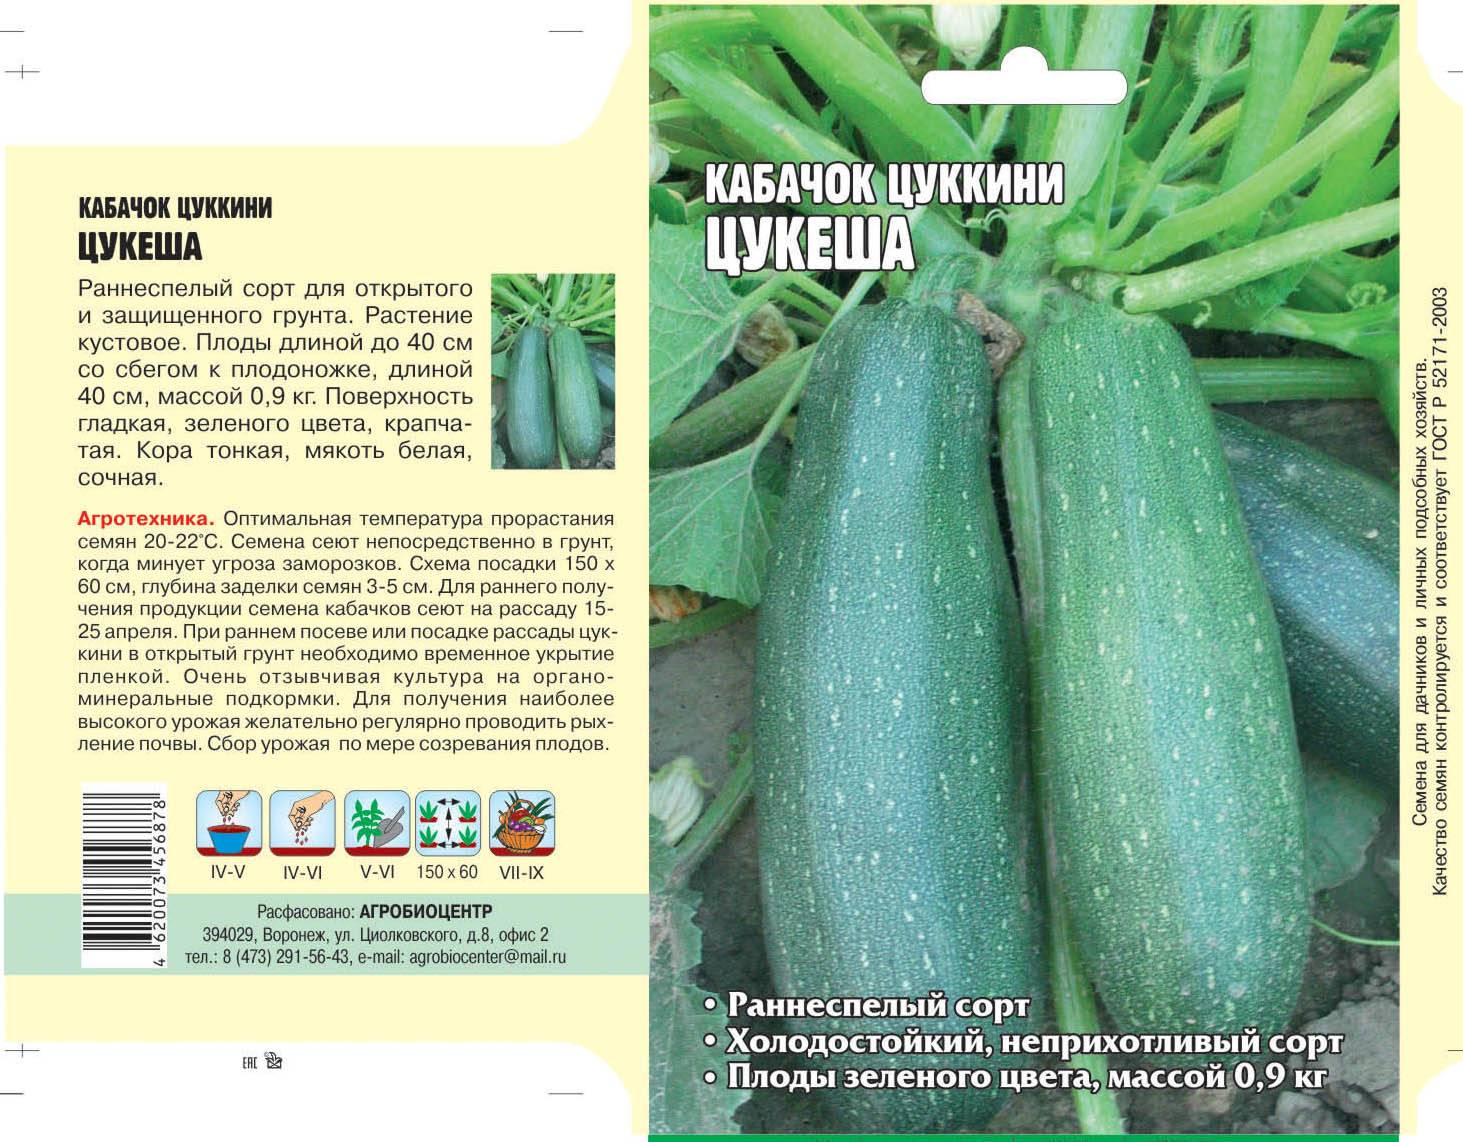 Кабачок искандер f1: отзывы, фото куста, описание и характеристика сорта, урожайность